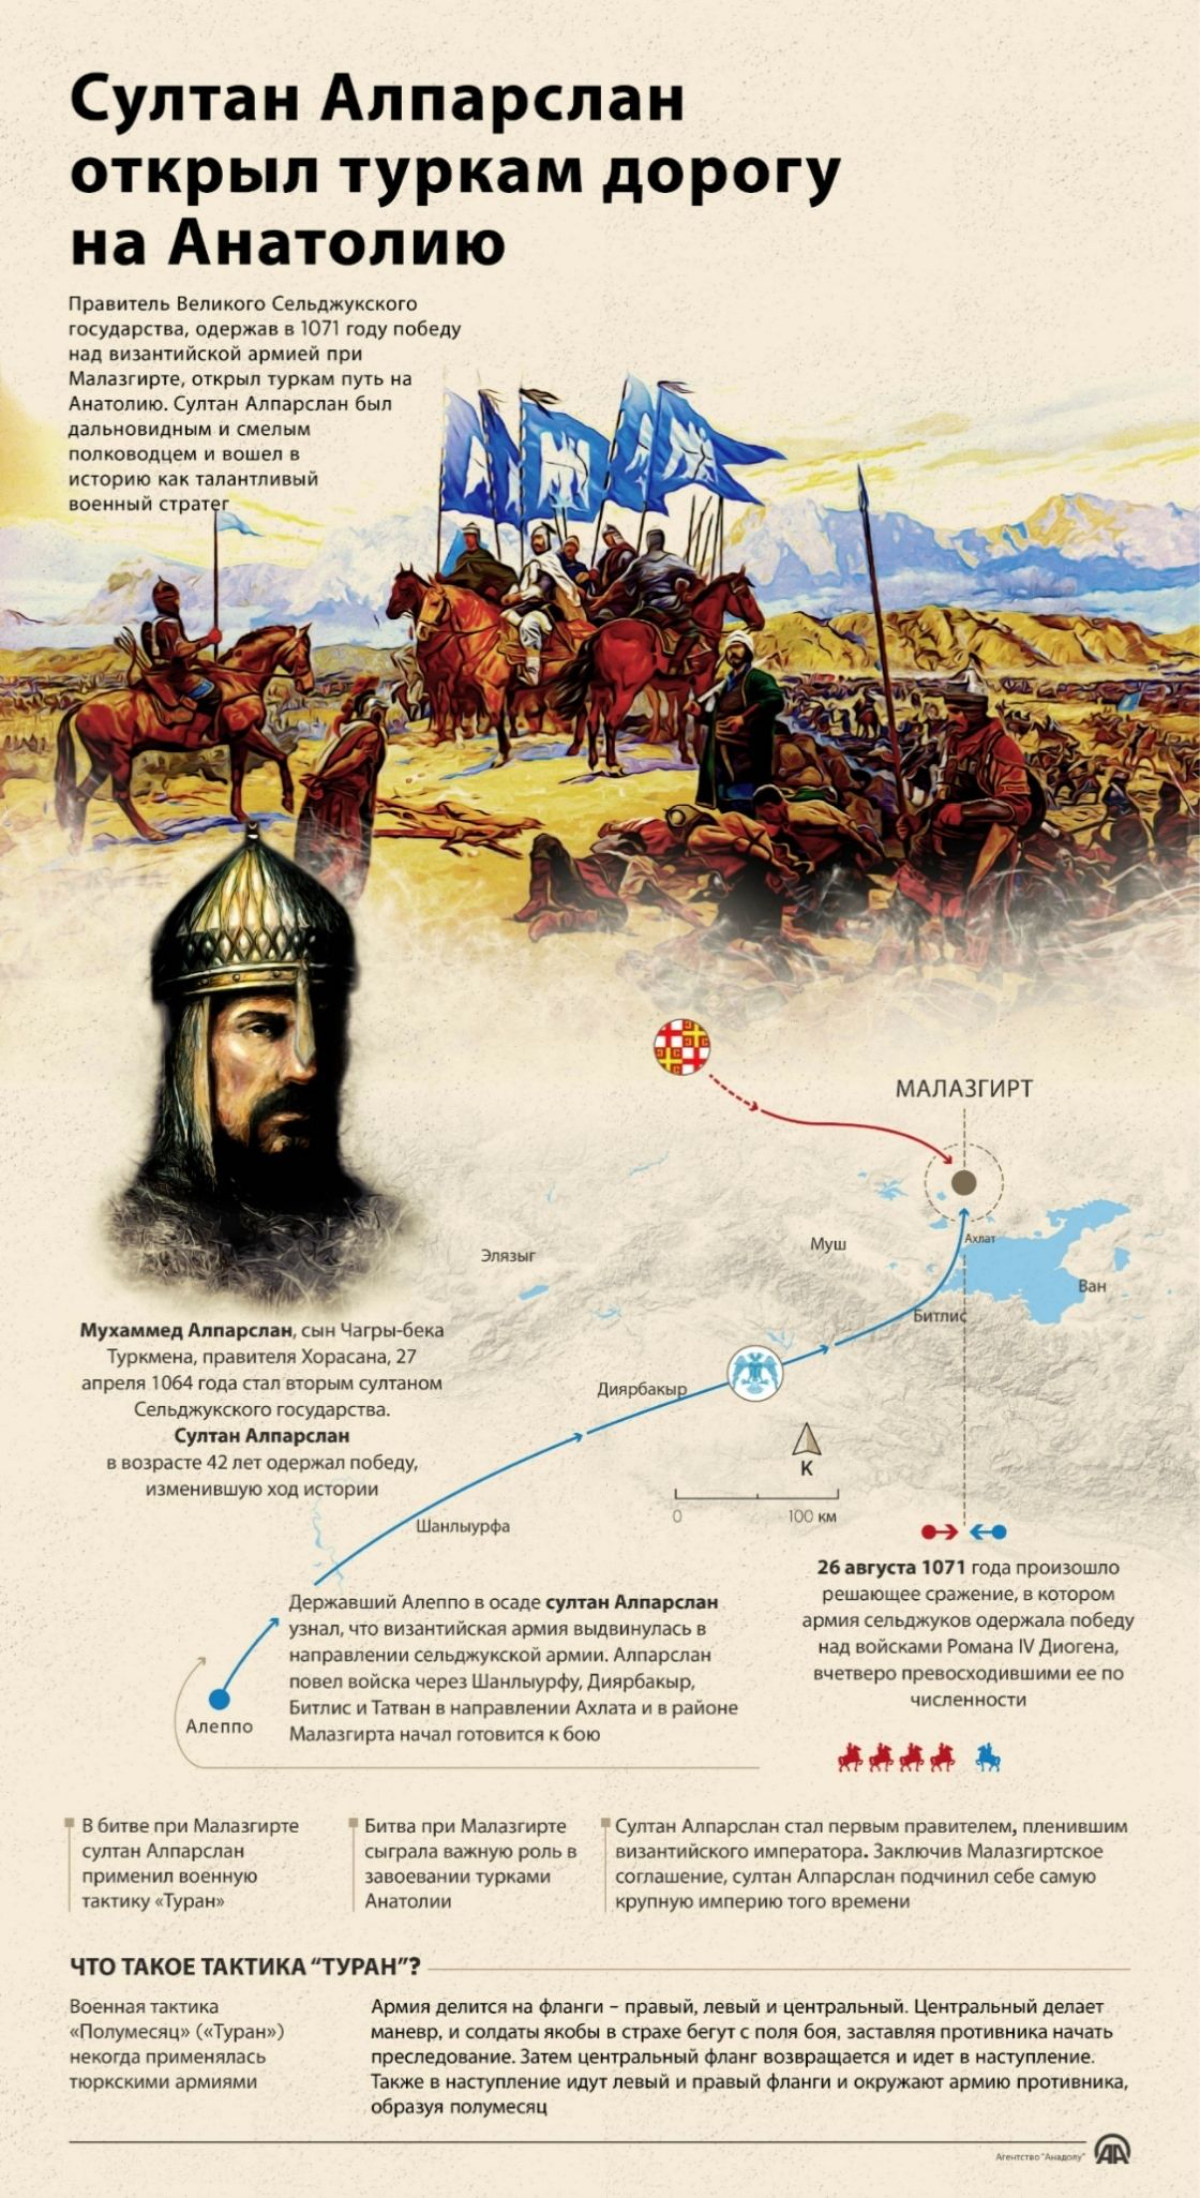 Султан Алпарслан открыл туркам дорогу на Анатолию